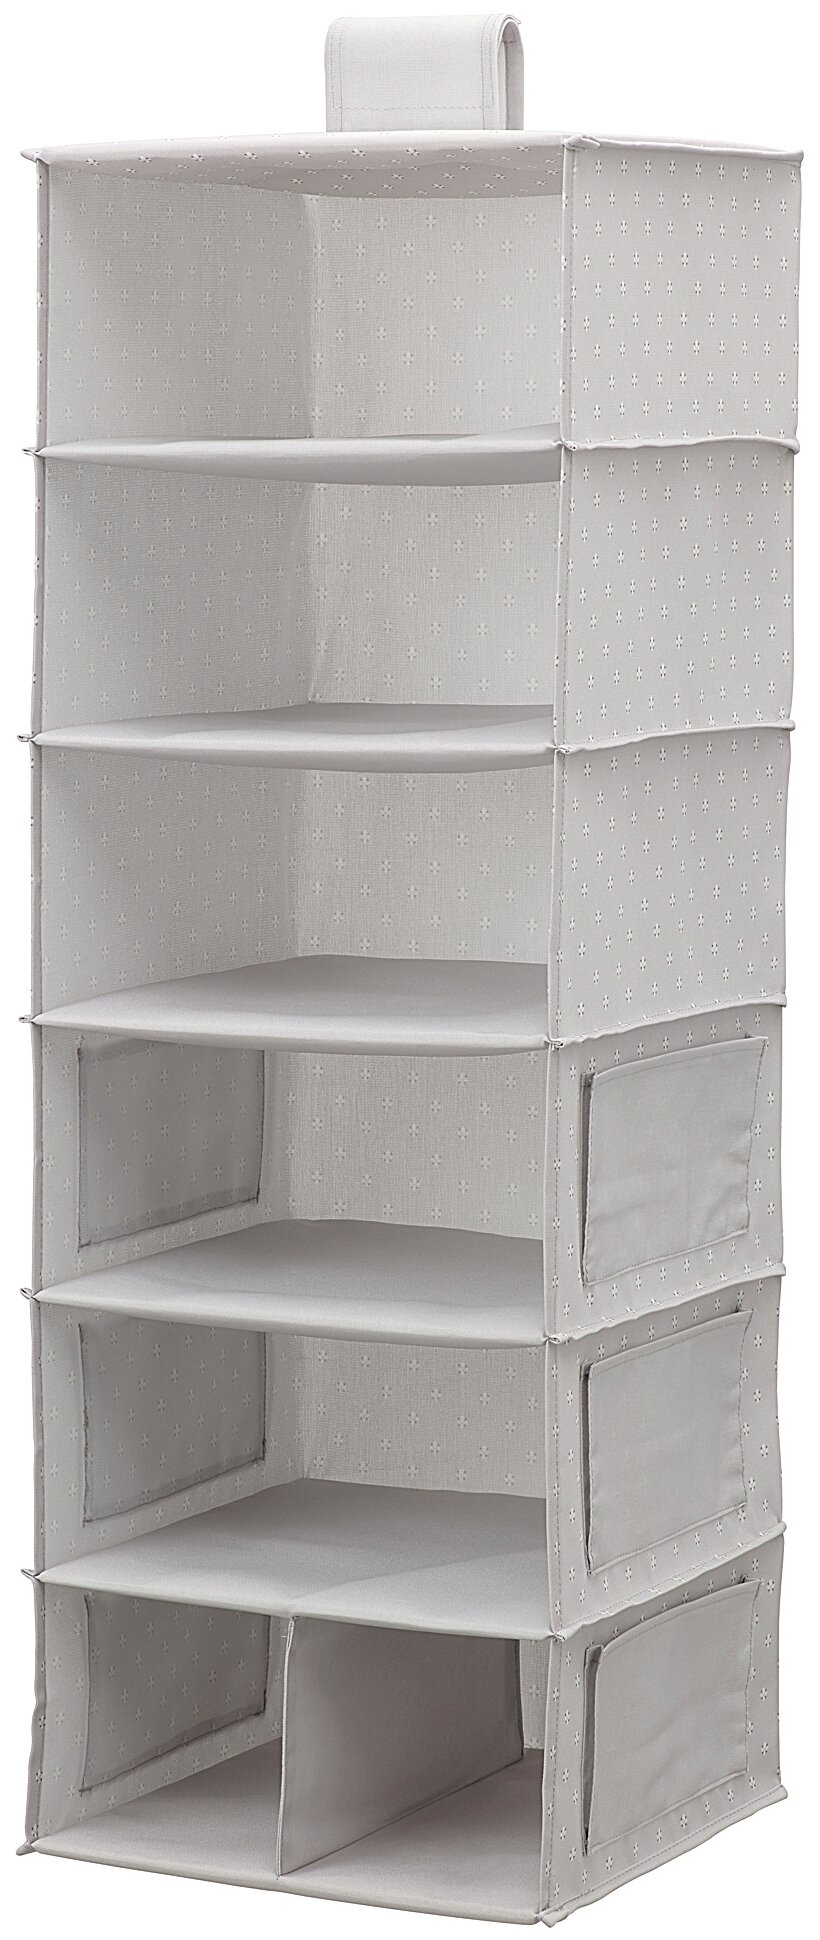 Органайзер аксессуары ИКЕА подвесной для шкафа БЛЭДДРАРЕ, 7 отделений, 30х30х90 см, серый с рисунком